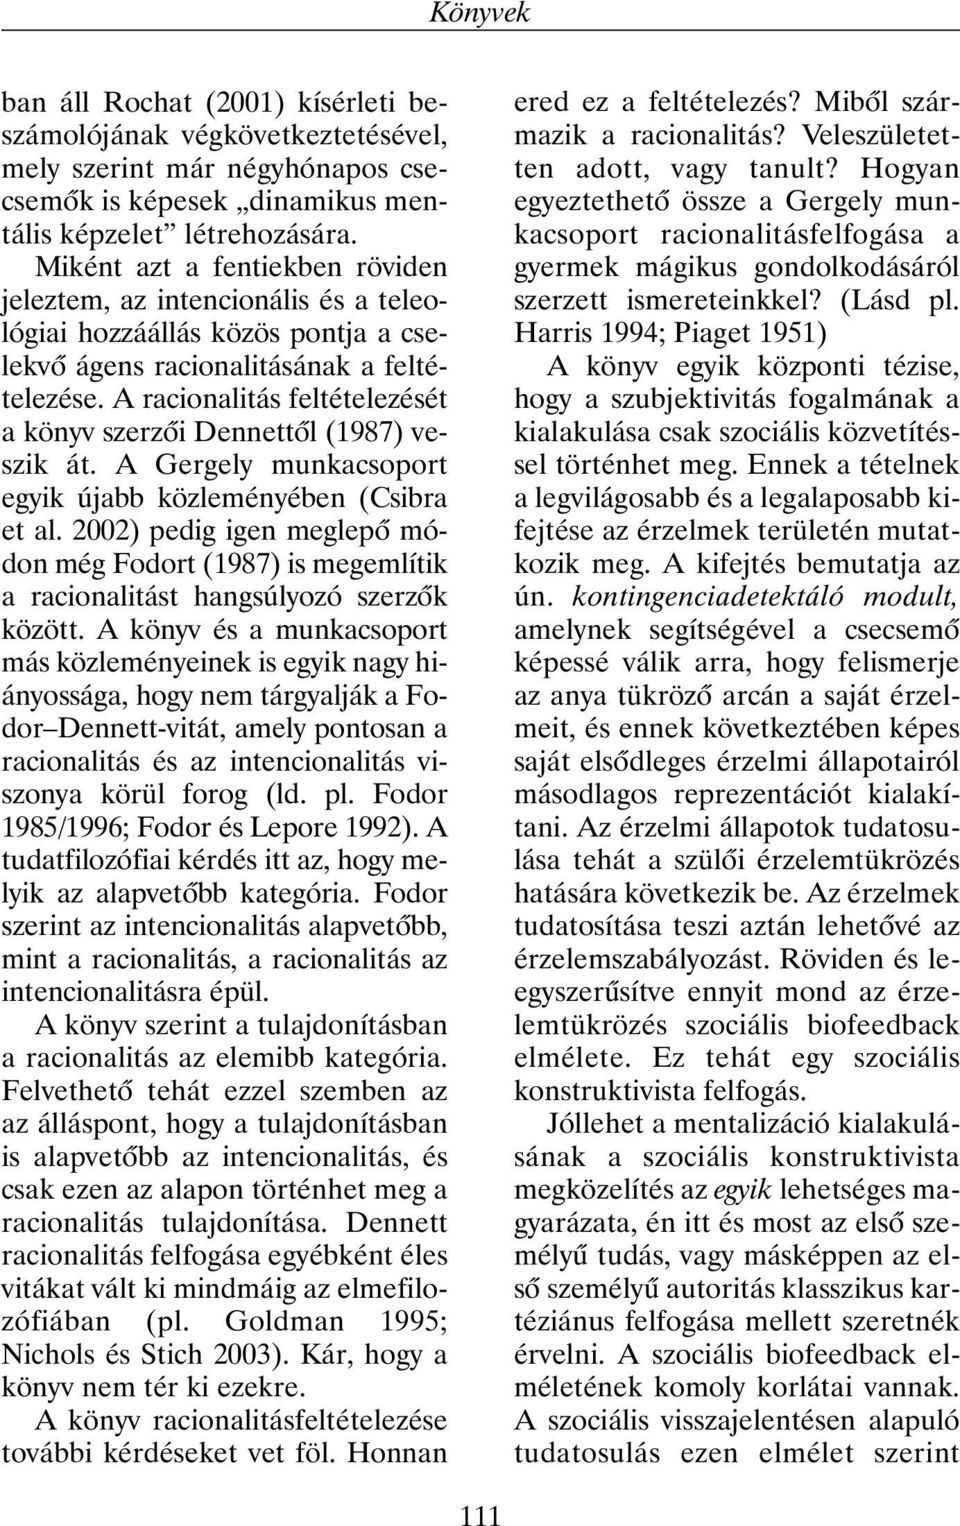 A racionalitás feltételezését a könyv szerzõi Dennettõl (1987) veszik át. A Gergely munkacsoport egyik újabb közleményében (Csibra et al.